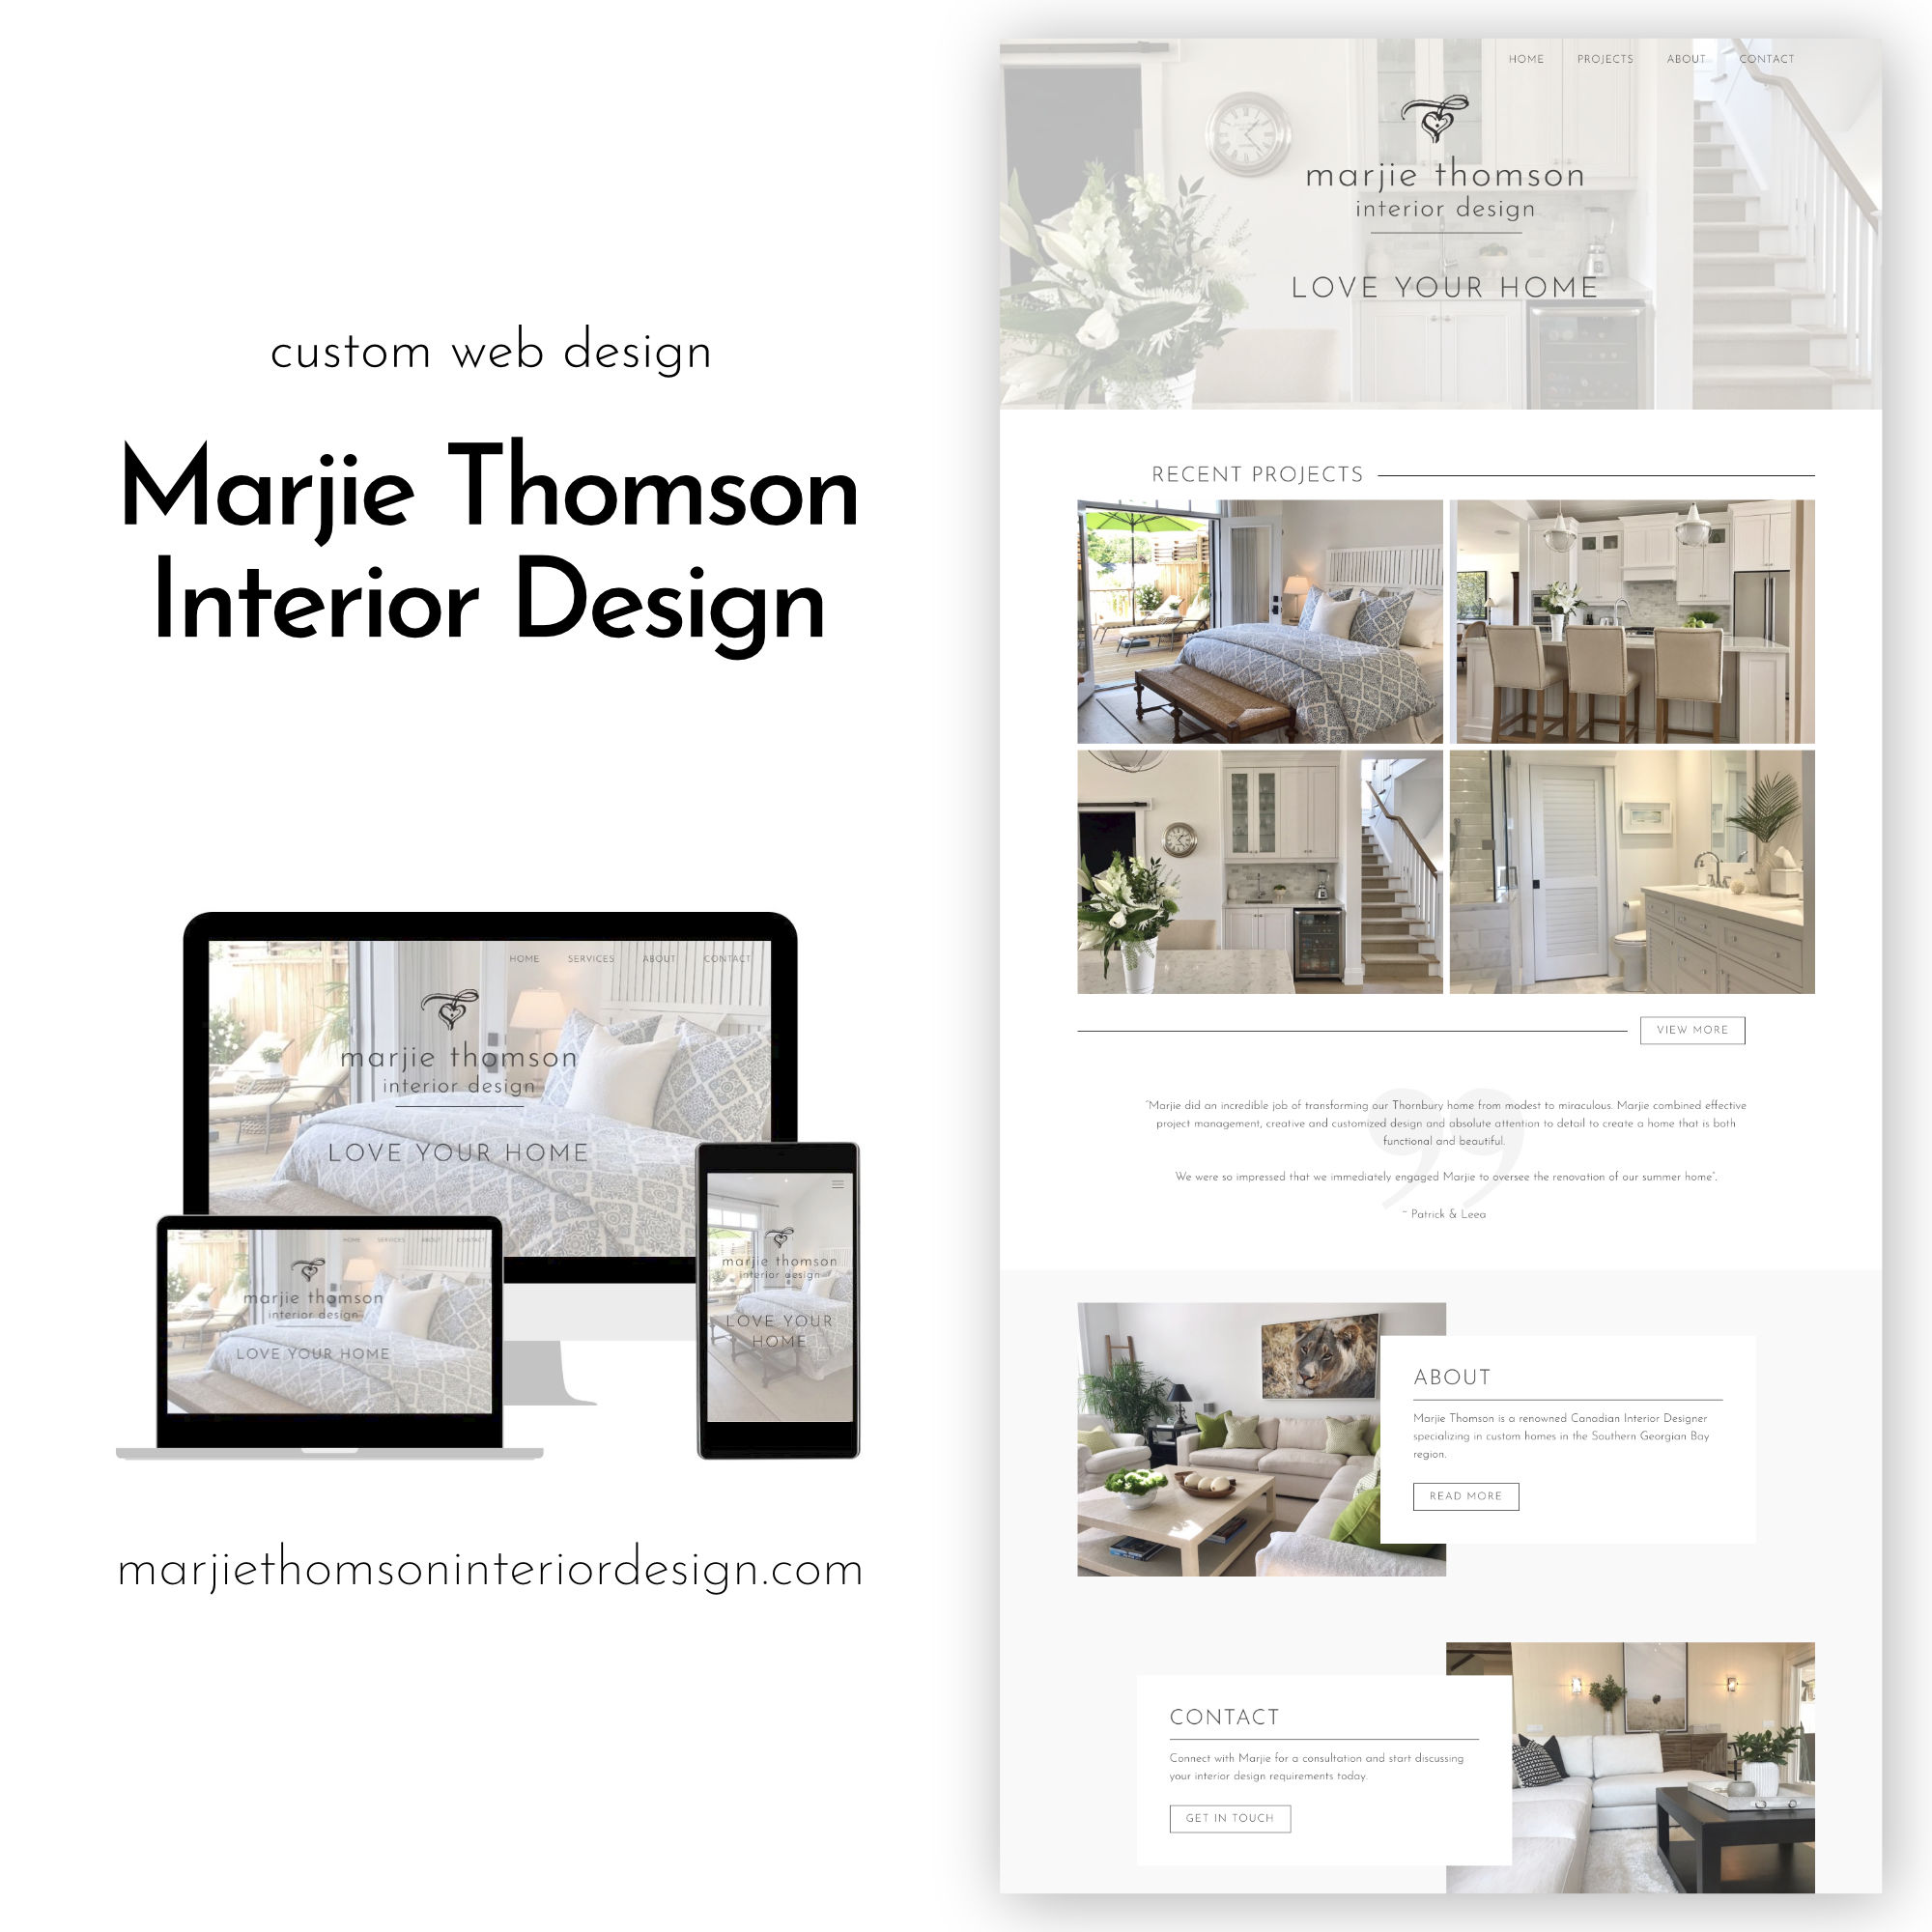 Marjie Thomson Interior Design Website